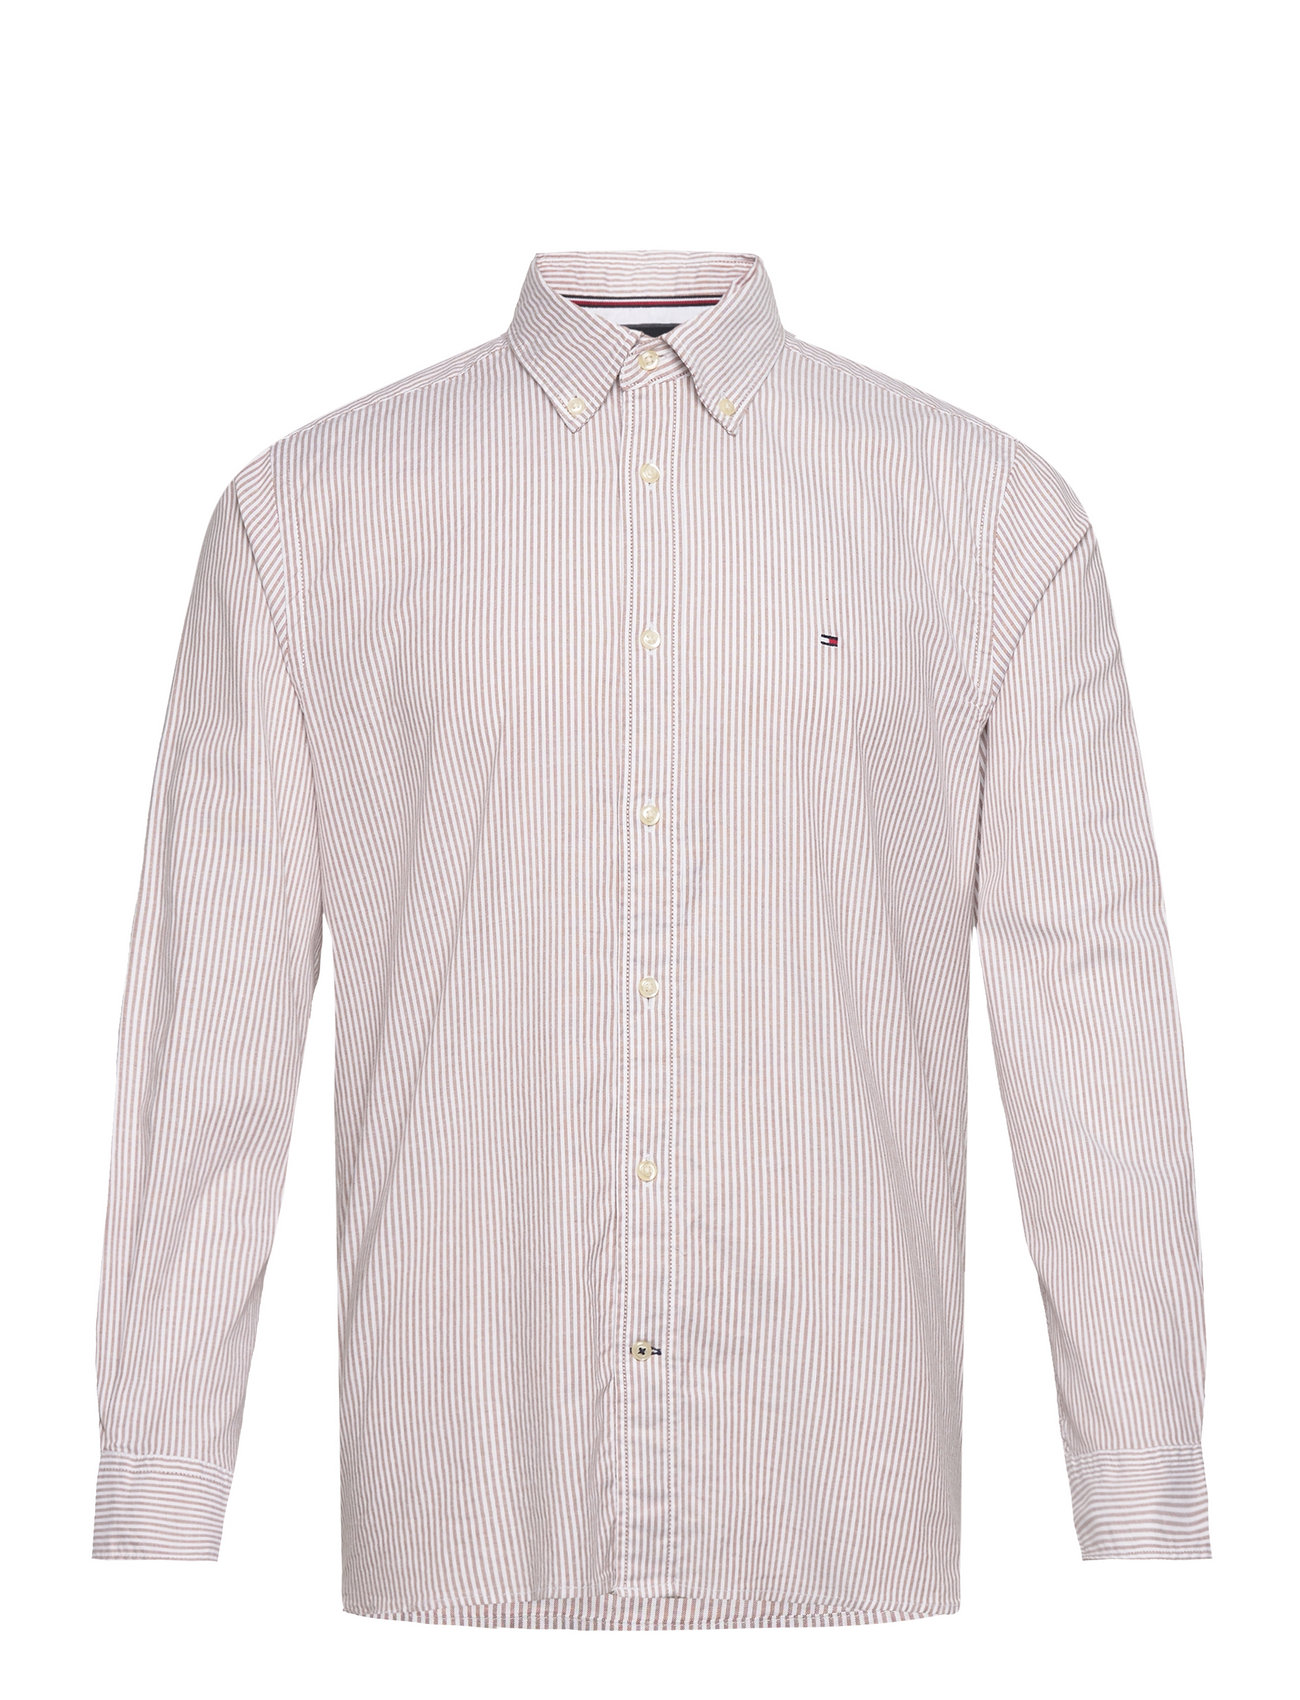 Tommy Hilfiger shirts 1985 - Shirt Casual Stripe Rf Flex Oxford